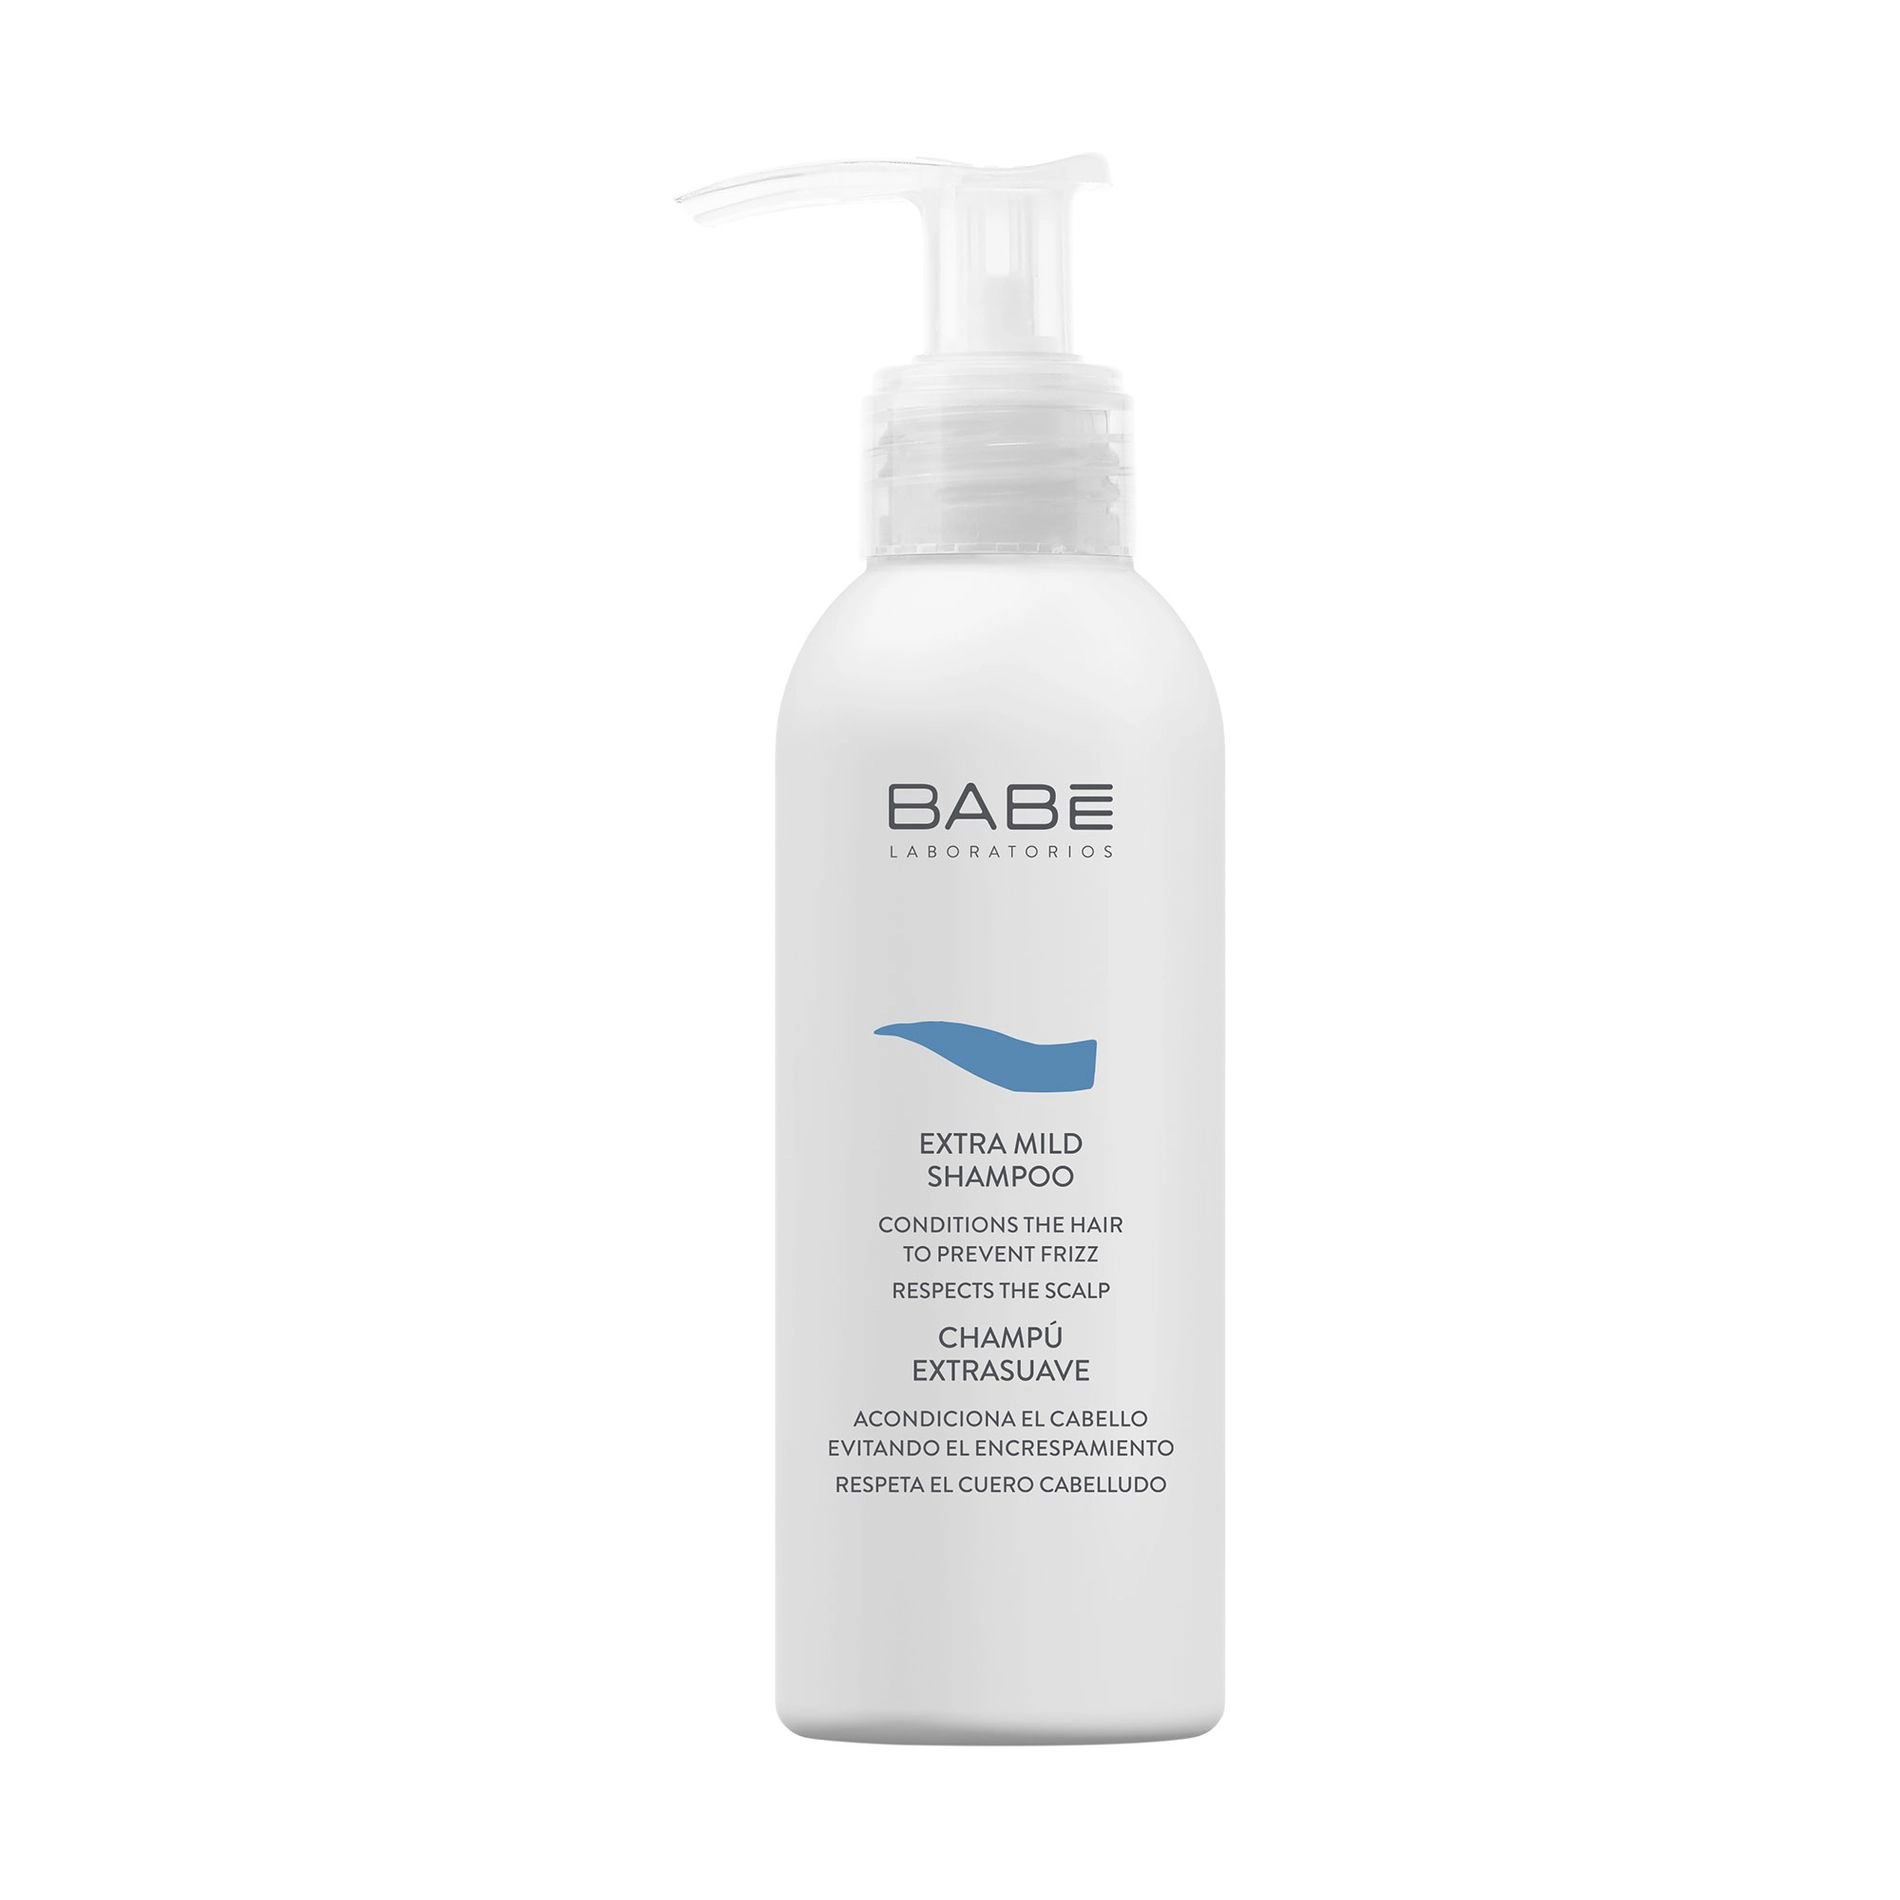 Екстрам'який шампунь для всіх типів волосся - BABE Laboratorios Extra Mild Shampoo, travel size, 100 мл - фото N3